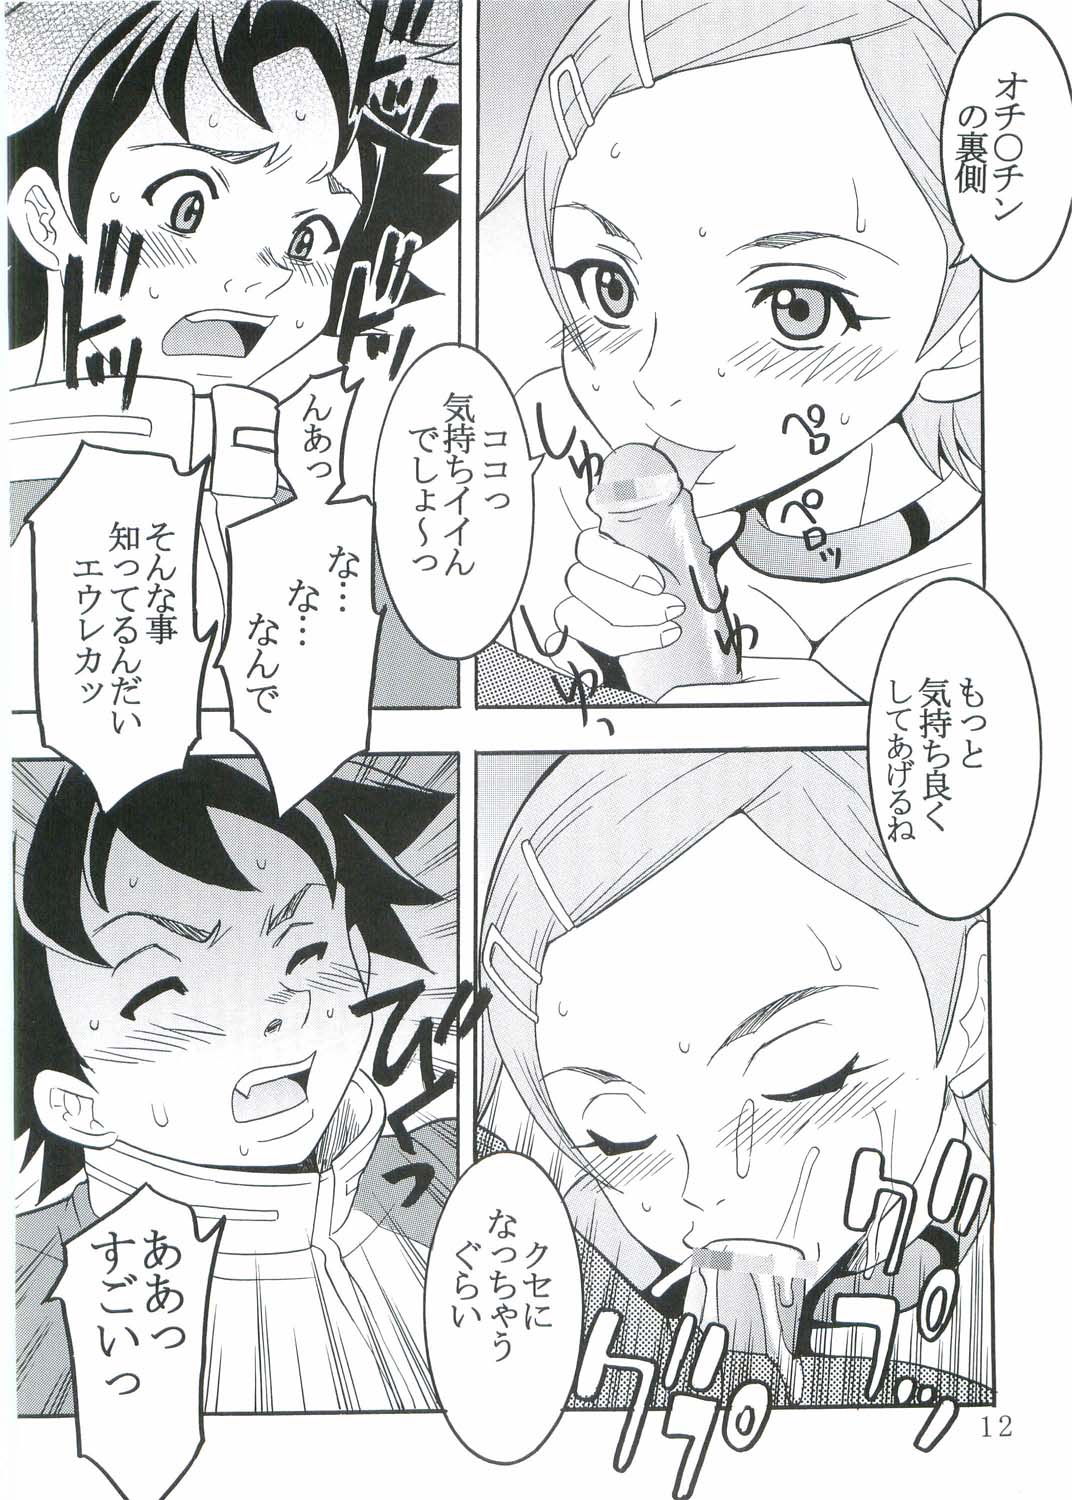 [St. Rio (Kitty, Kouenji Rei)] Ura ray-out (Eureka seveN) page 13 full